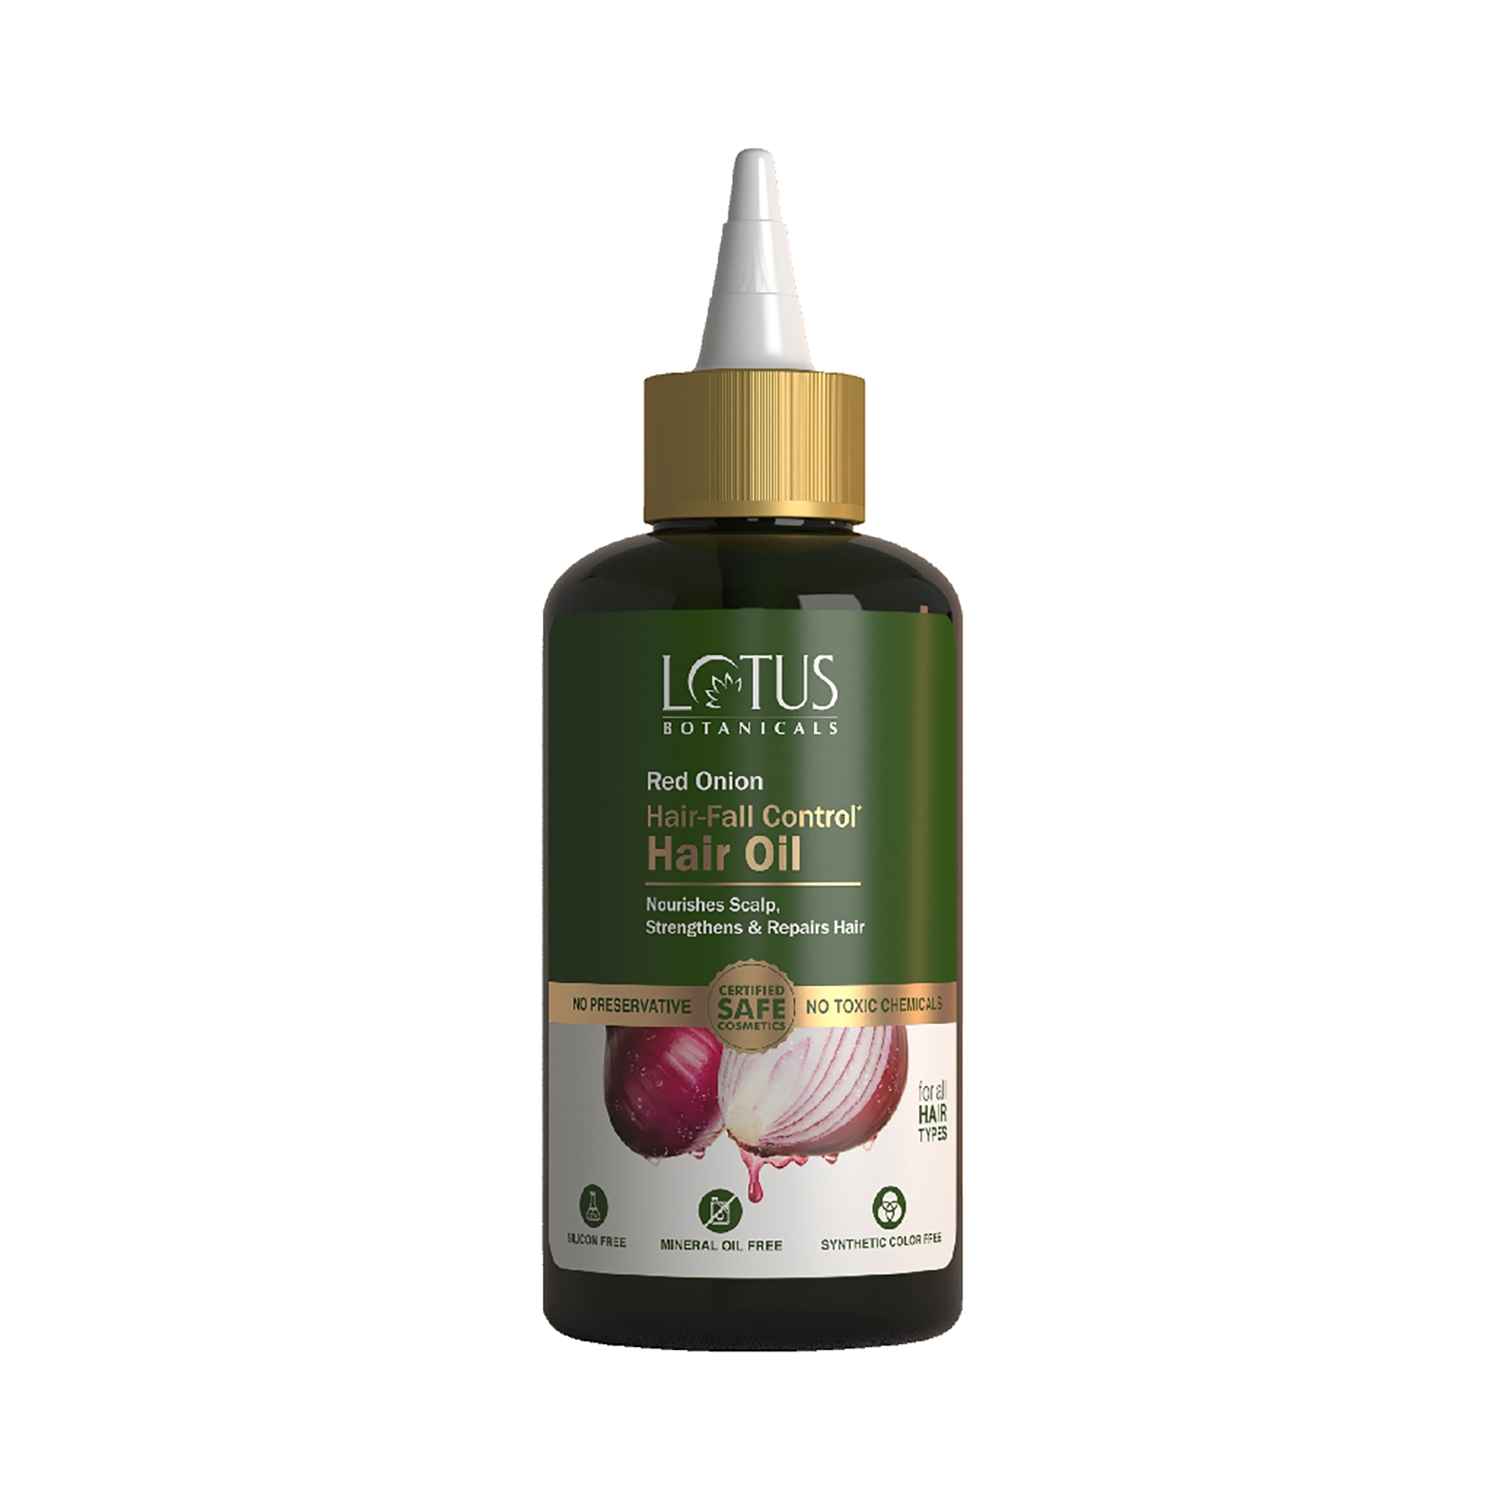 Lotus Botanicals Red Onion Hair Fall Control Hair Oil (200ml)